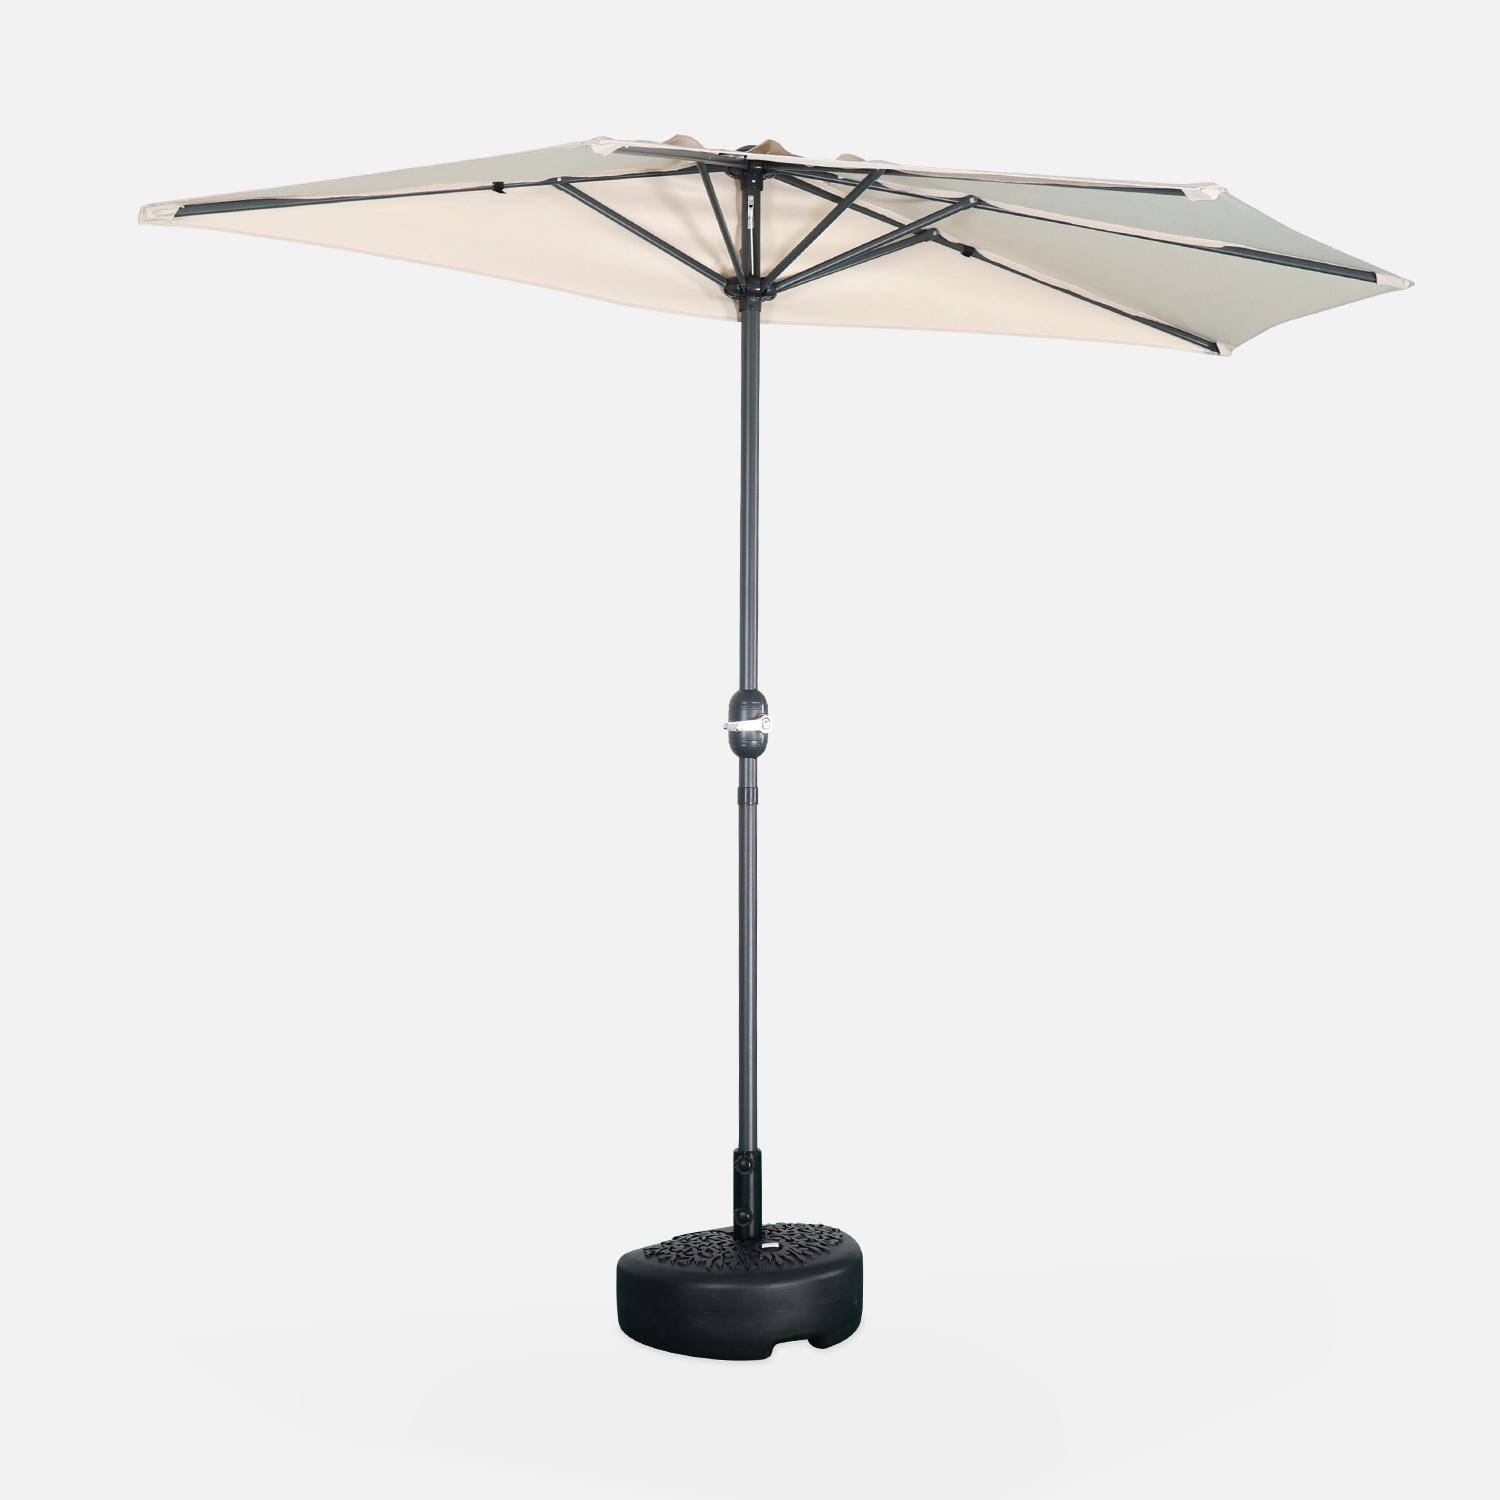 Ombrellone da balcone Ø250cm - CALVI - Mezzo ombrellone dritto, palo in alluminio con manovella, telo colore sabbia,sweeek,Photo2